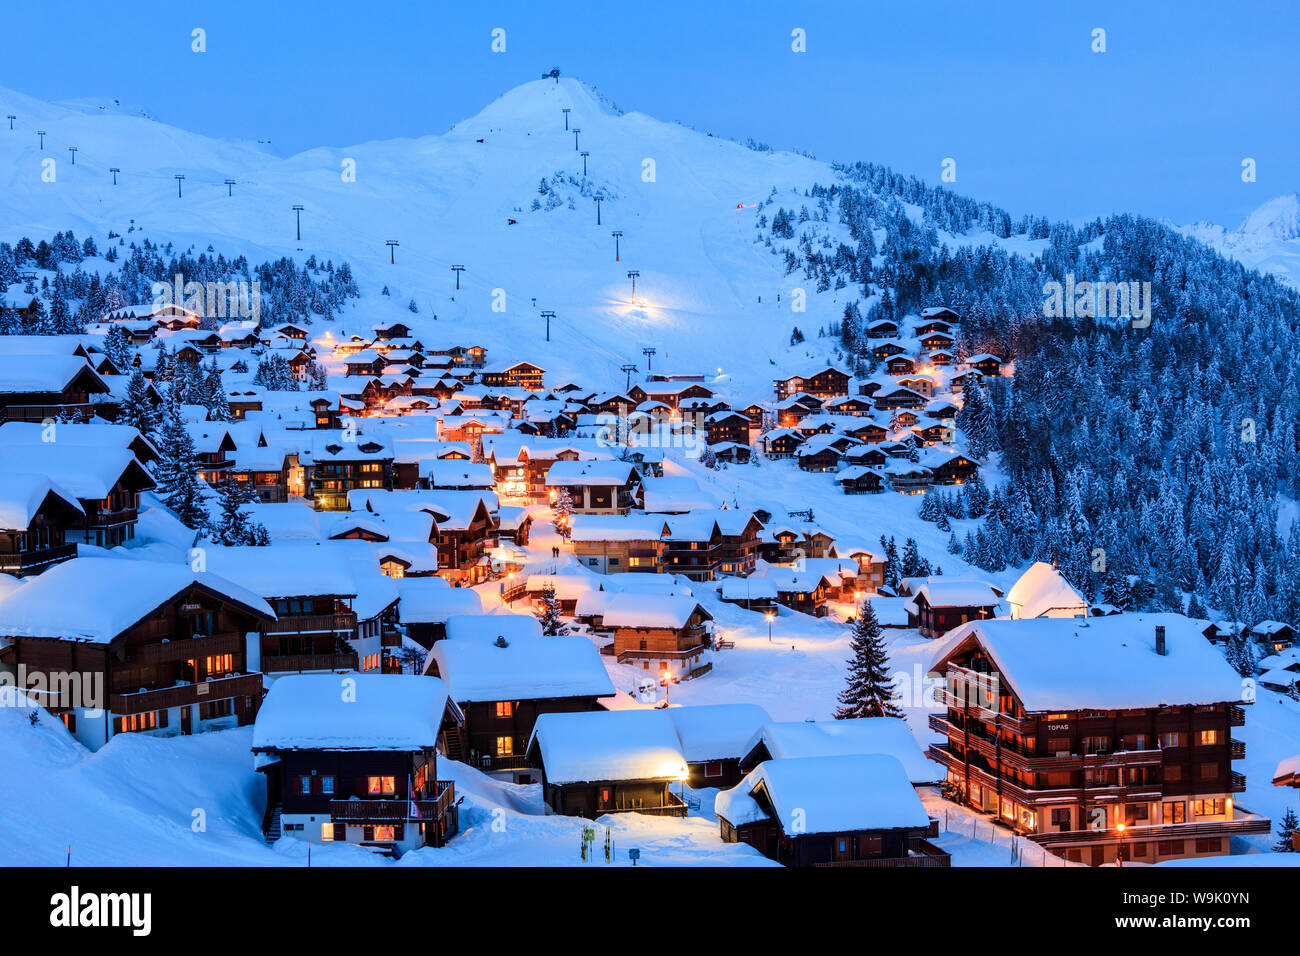 Crépuscule bleu sur le village alpin enneigé entouré par les remontées mécaniques, Bettmeralp, district de Rarogne, canton du Valais, Suisse, Europe Banque D'Images